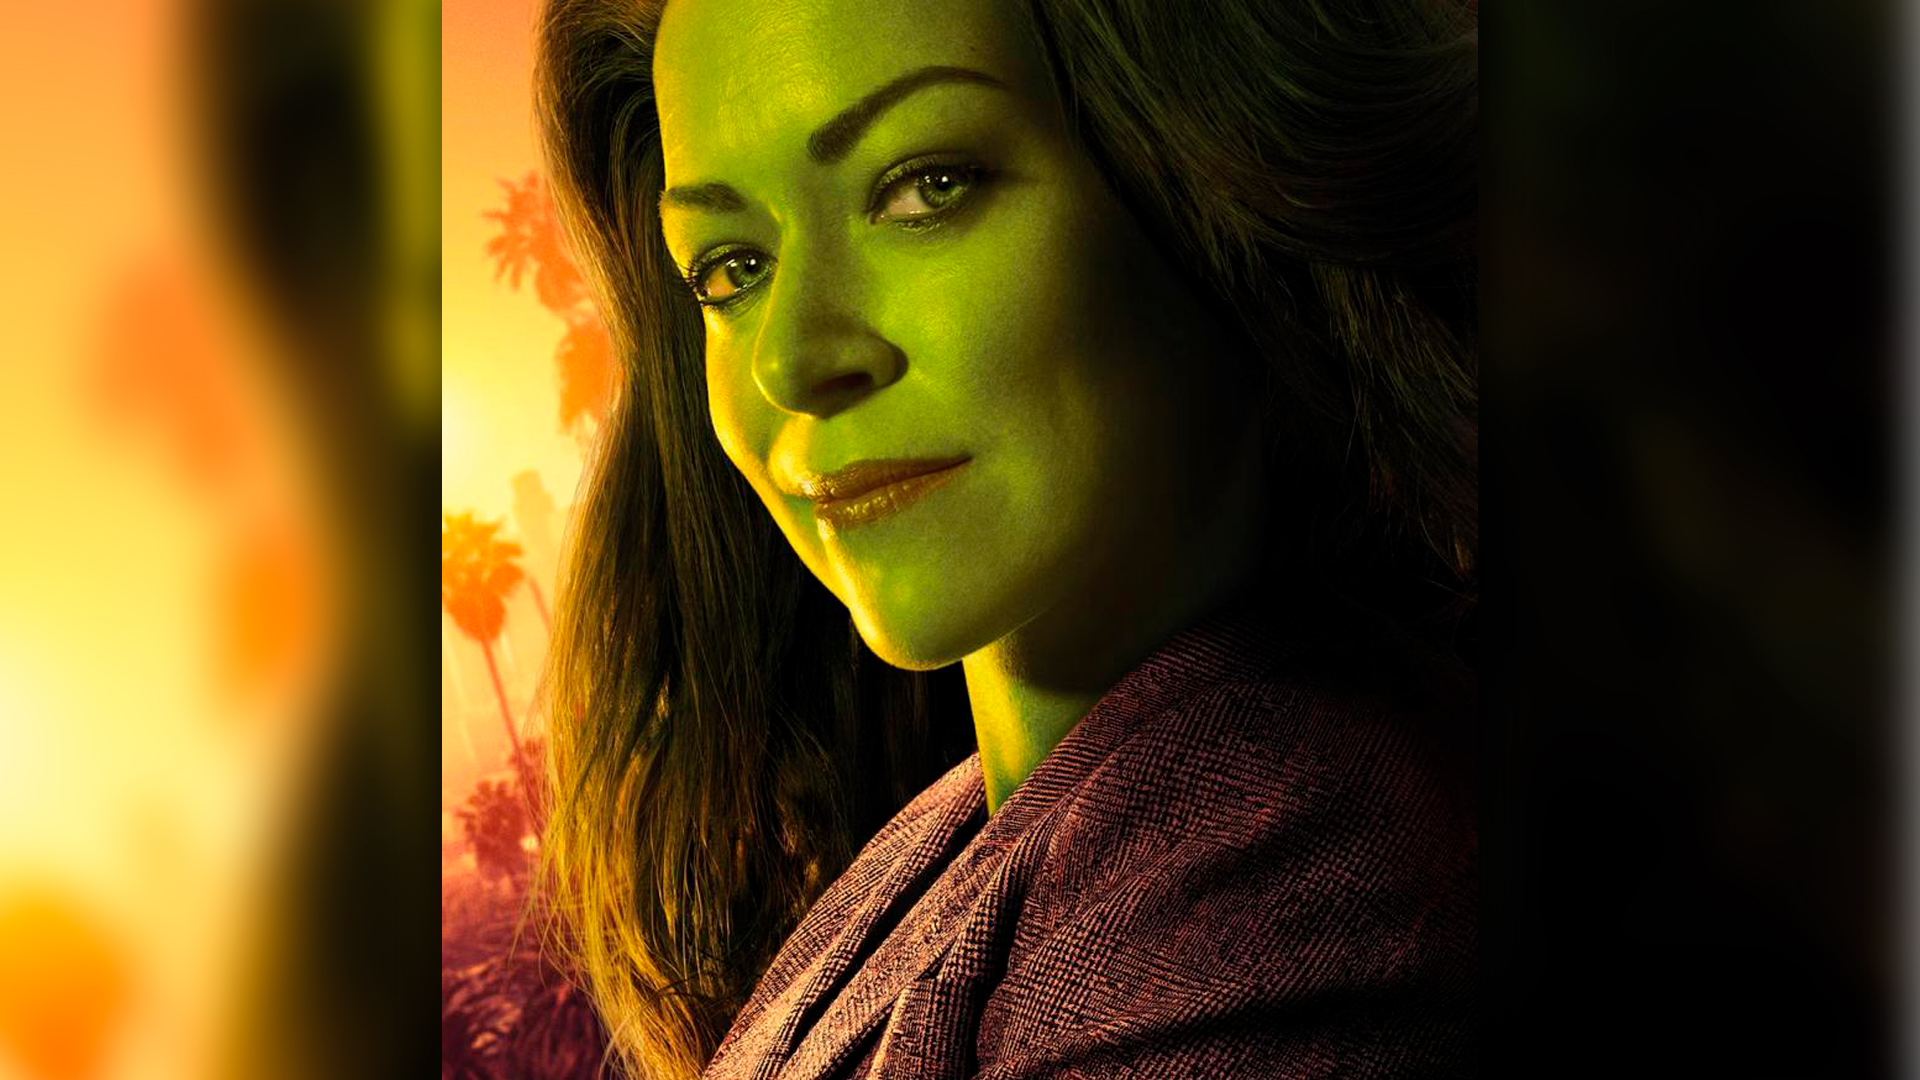 Detalles, curiosidades y todo lo que deberías saber de “She-Hulk” antes de su estreno